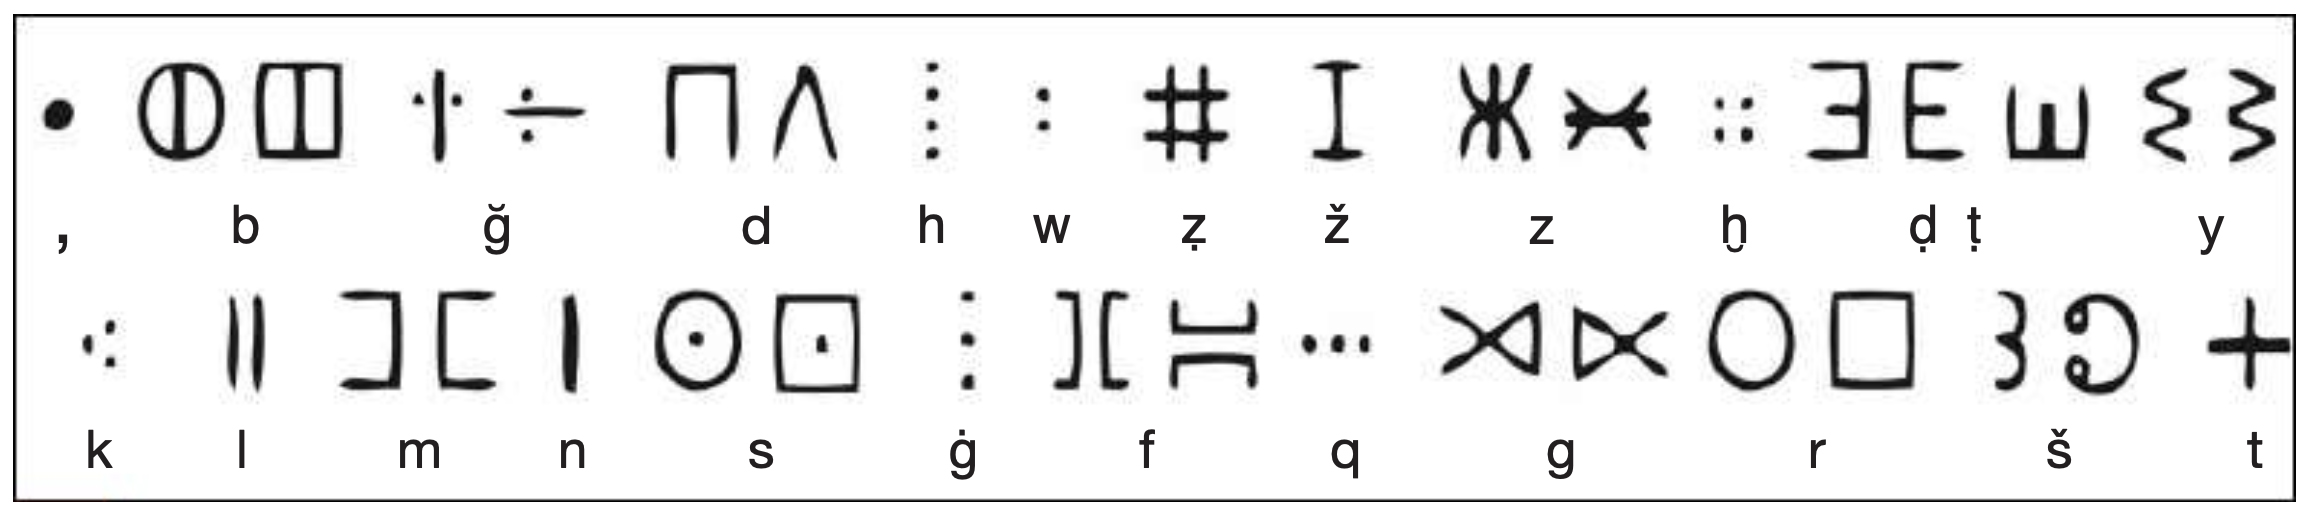 Figure 8. Écriture dite tafinaq (tifinagh au pluriel), en usage chez les Touaregs. Certaines consonnes du système tafinaq sont conçues à l ’aide de points, contrairement aux inscriptions libyques de Dougga qui sont gravées à l’aide de traits; un trait est un signe reliant deux points. Le Corpus de l’abbé Jean-Baptiste Chabot R.I.L. (Recueil des Inscriptions Libyques, Alger, 1940) a répertorié plus de 1500 inscriptions sur des stèles mises au jour au Maghreb. Ces stèles découvertes il y a plus d’un siècle, n’ont fait l’objet d’aucune analyse approfondie à ce jour.